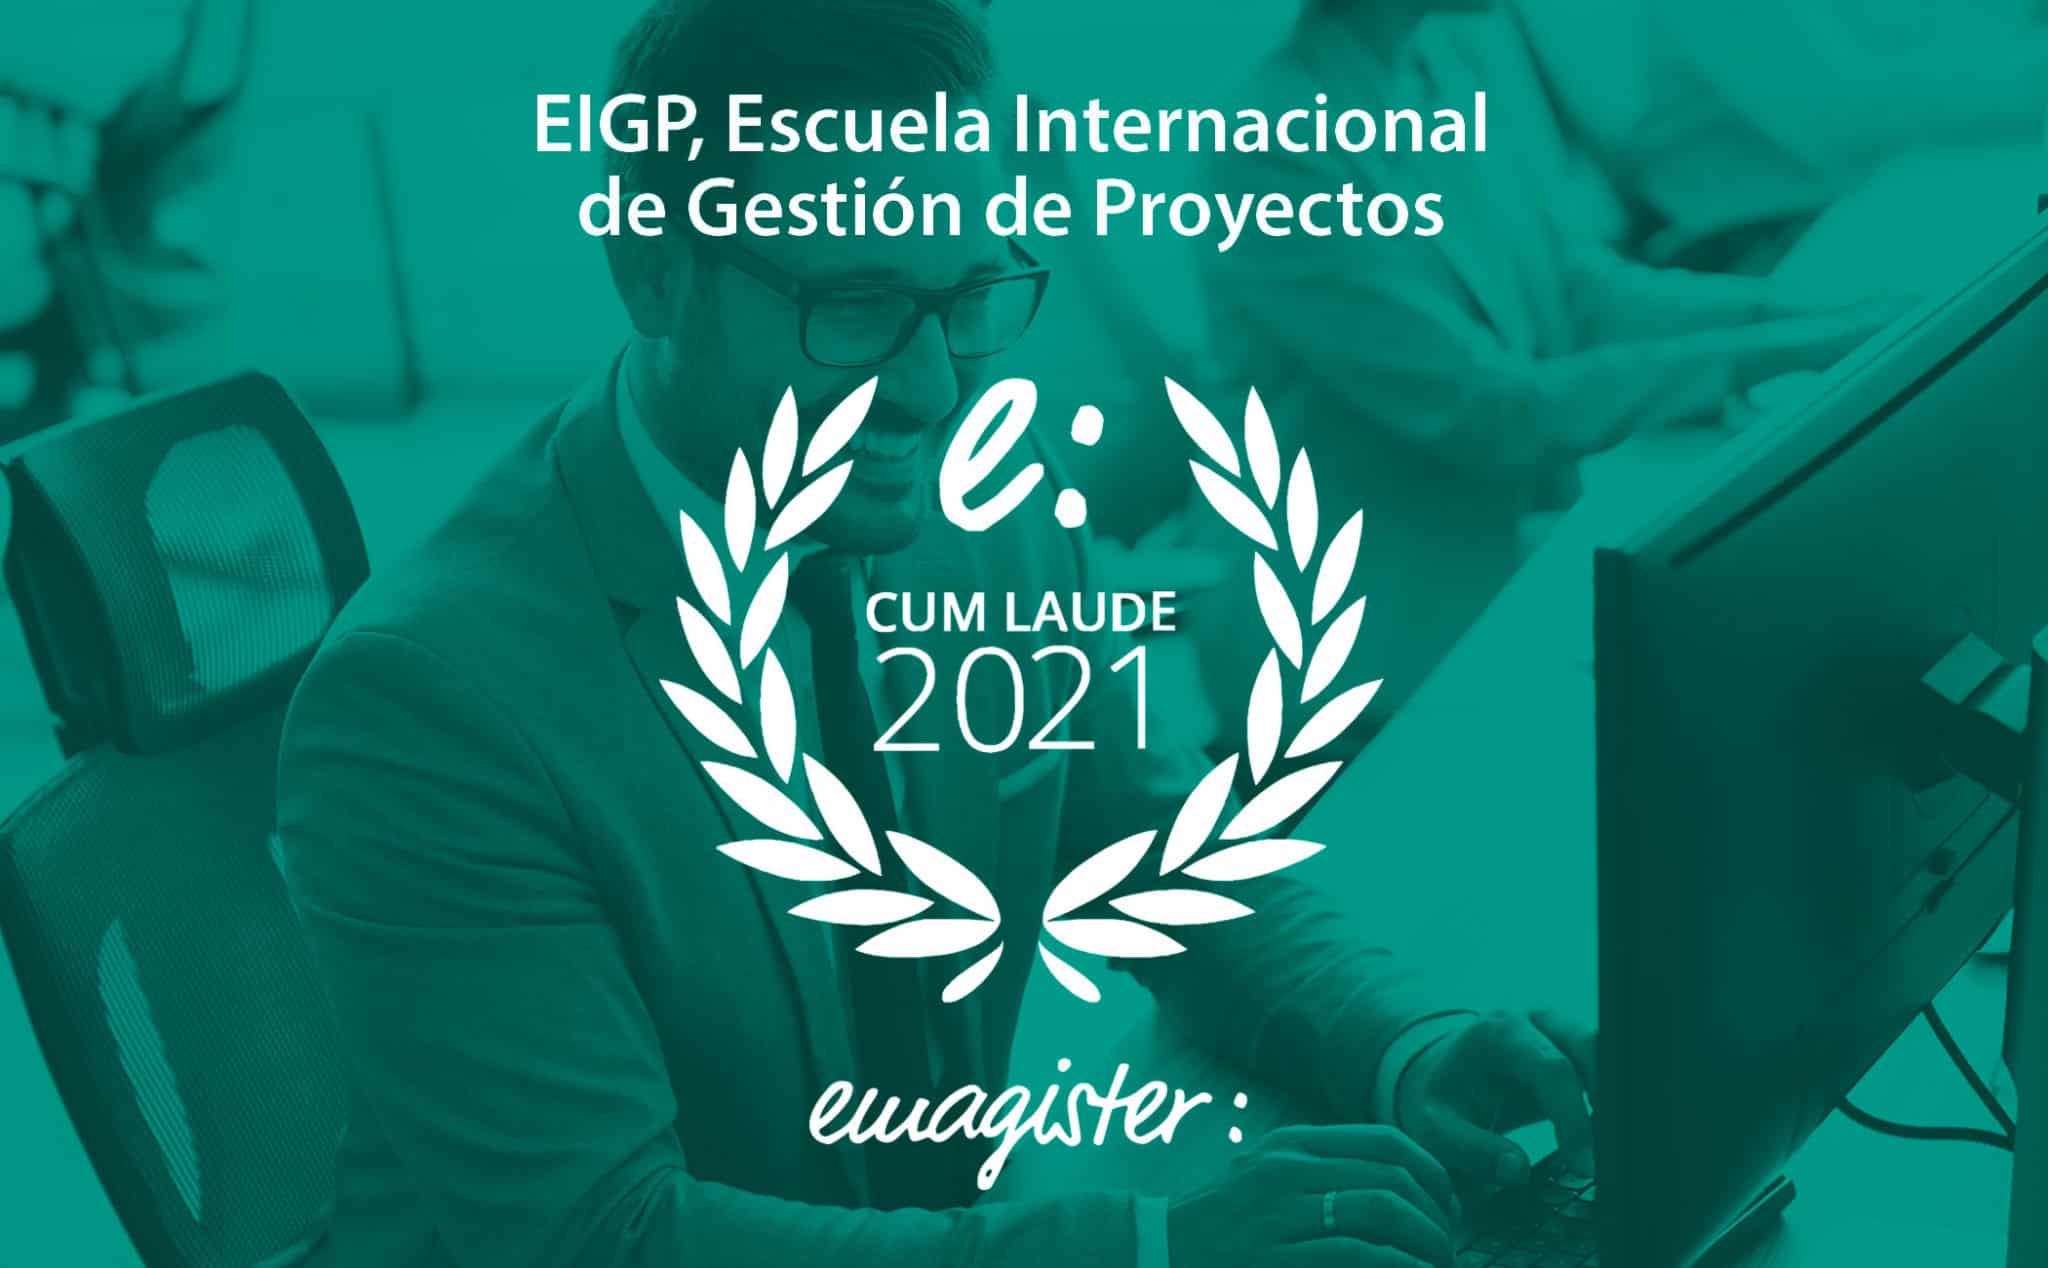 EIGP, Empresa líder en formación de dirección de proyectos